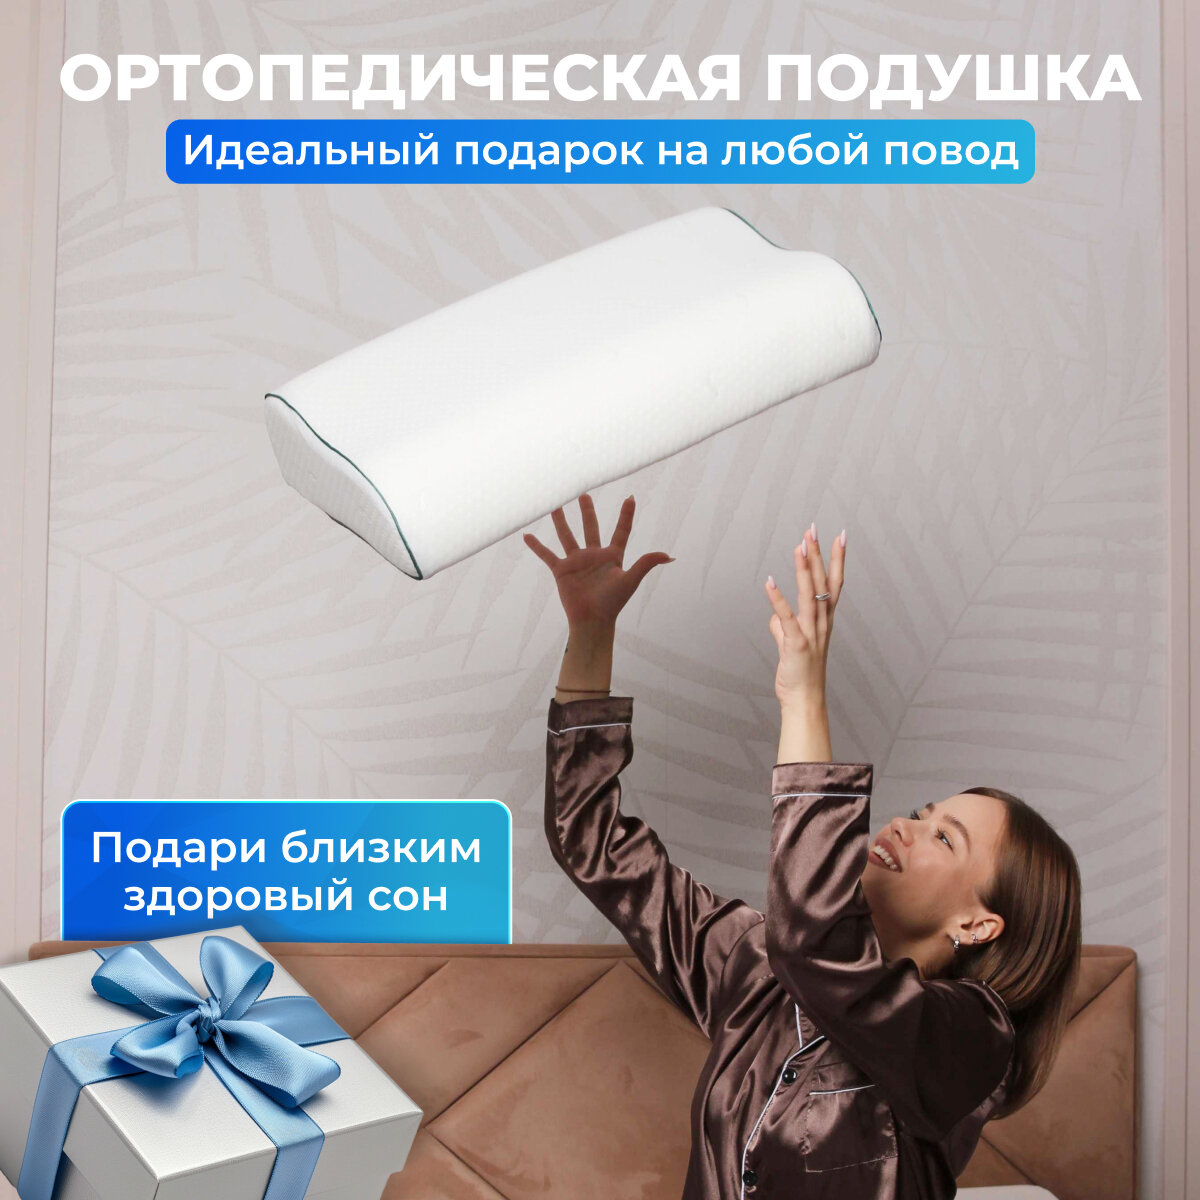 Подушка анатомическая ортопедическая для сна Memory Foam с эффектом памяти средней жесткости 54х40 валики 13 и 11 см